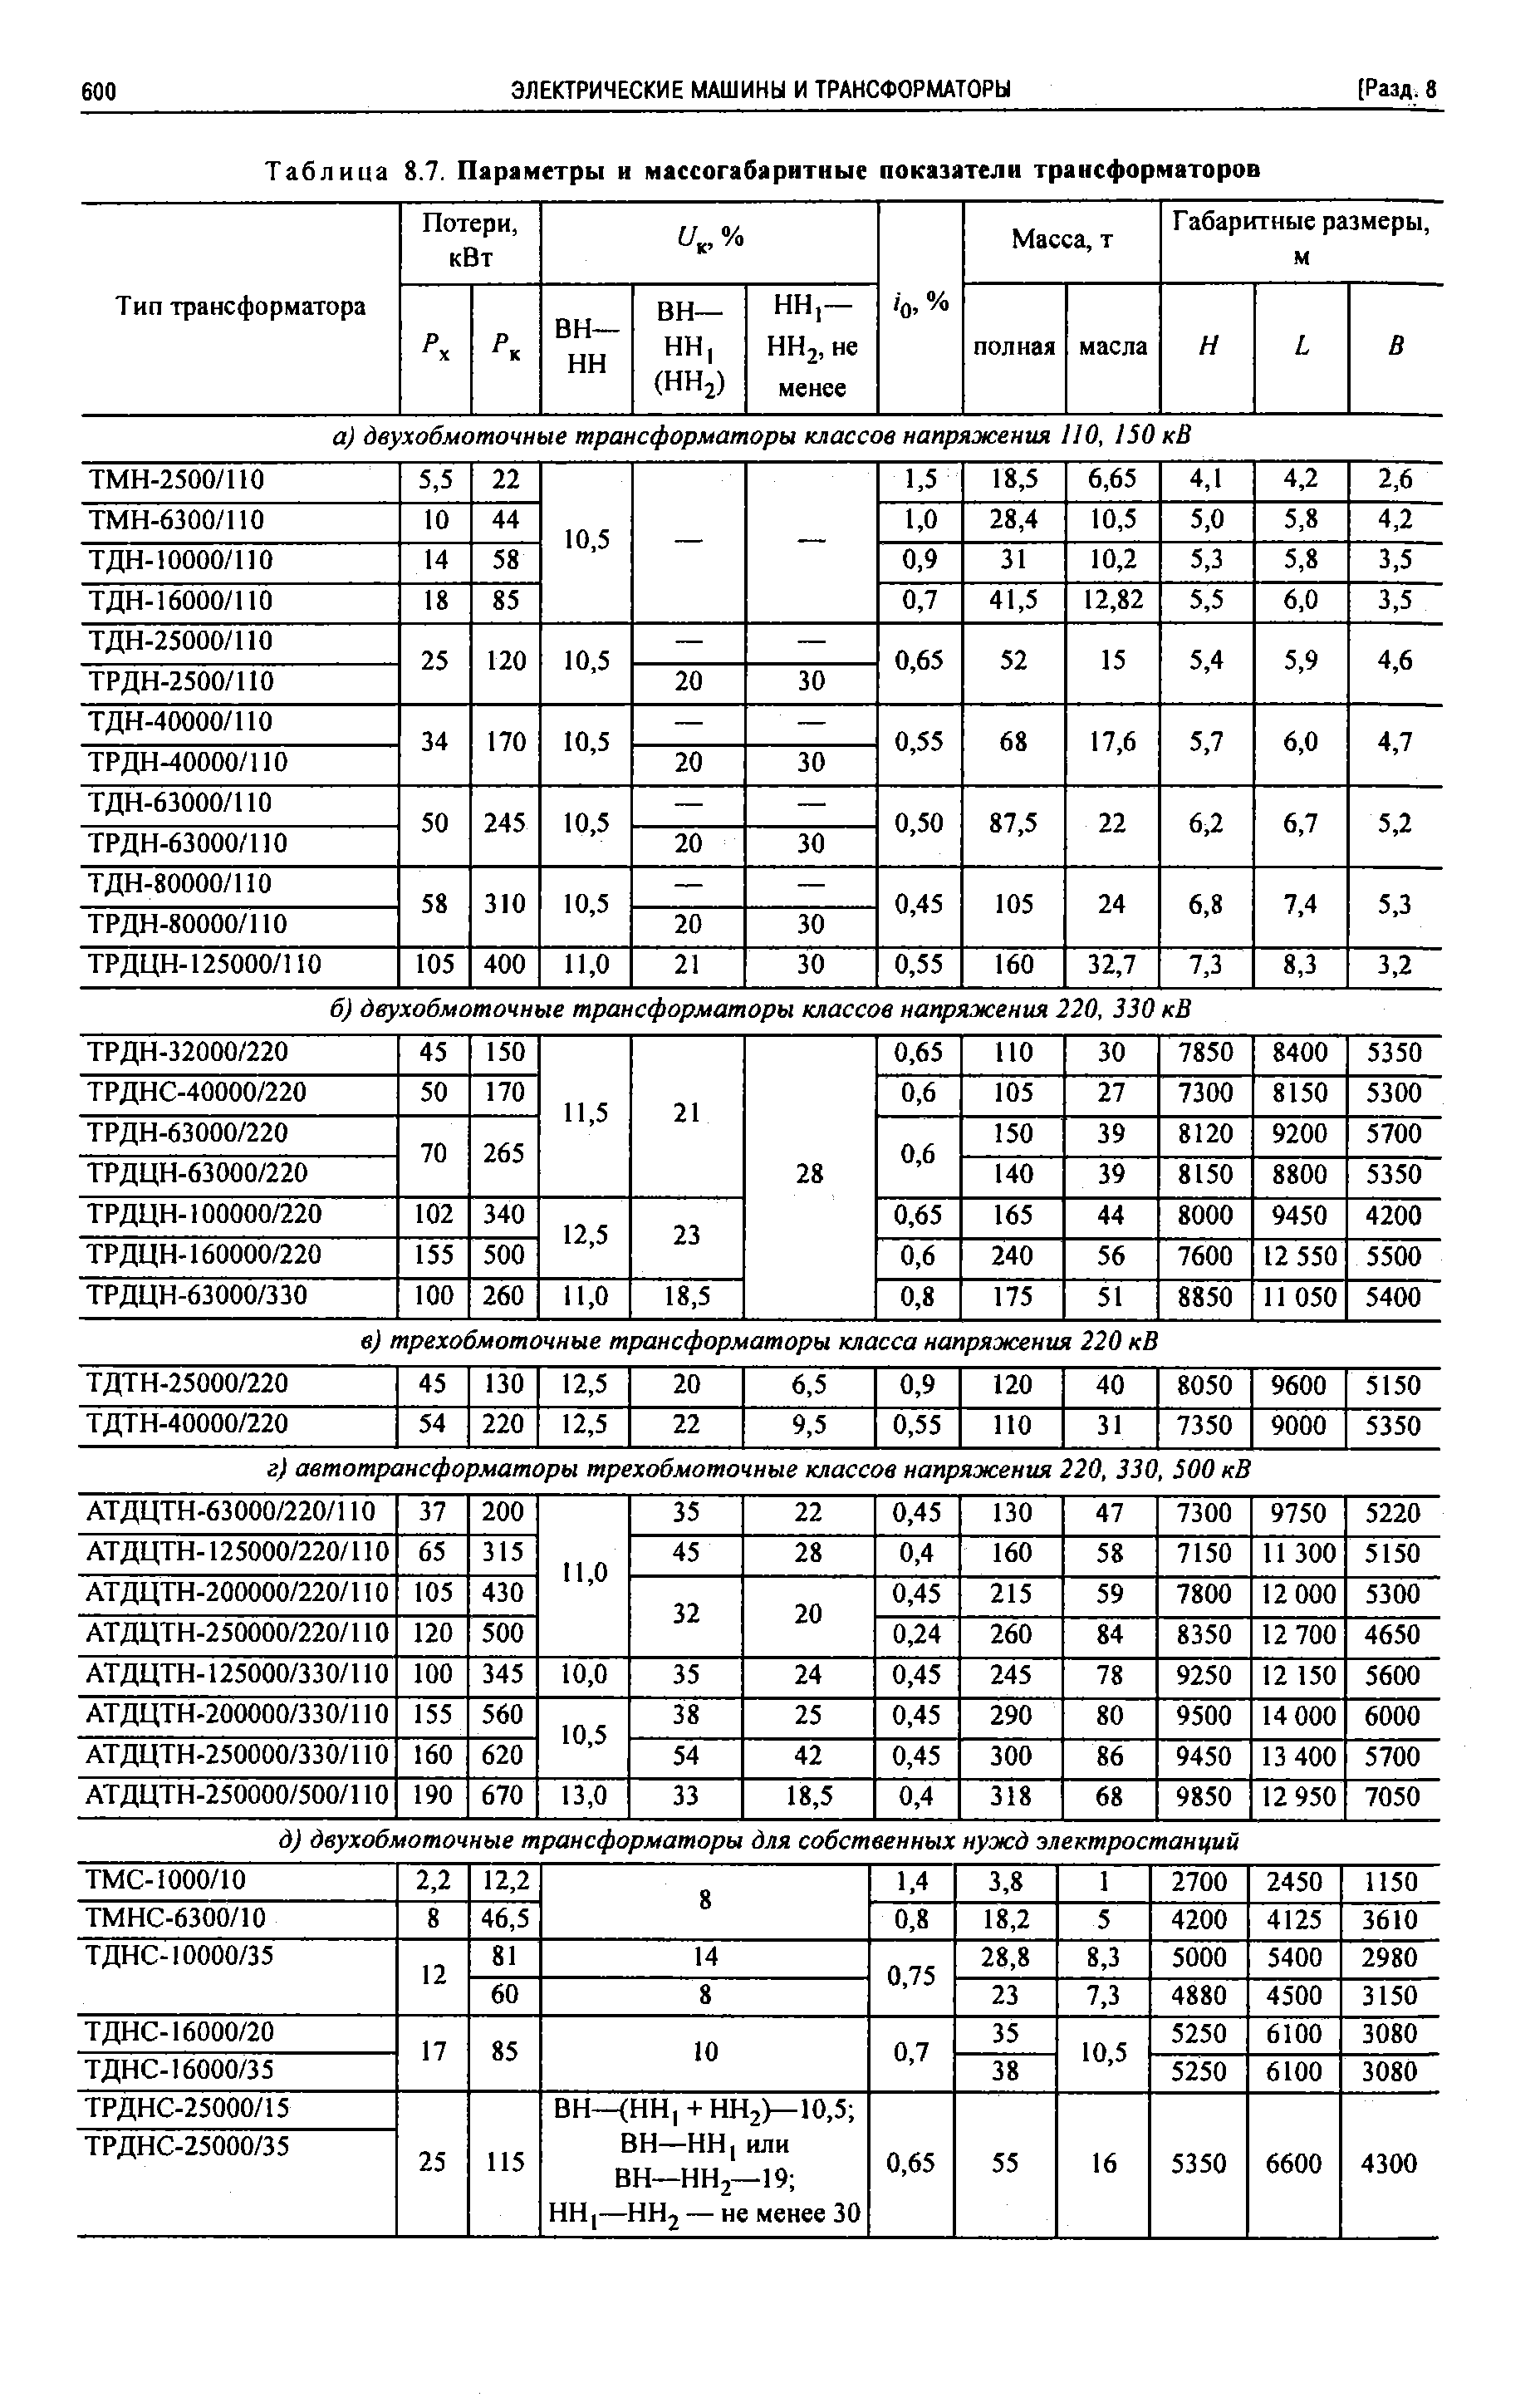 Таблица 8.7. Параметры и массогабаритные показатели трансформаторов
